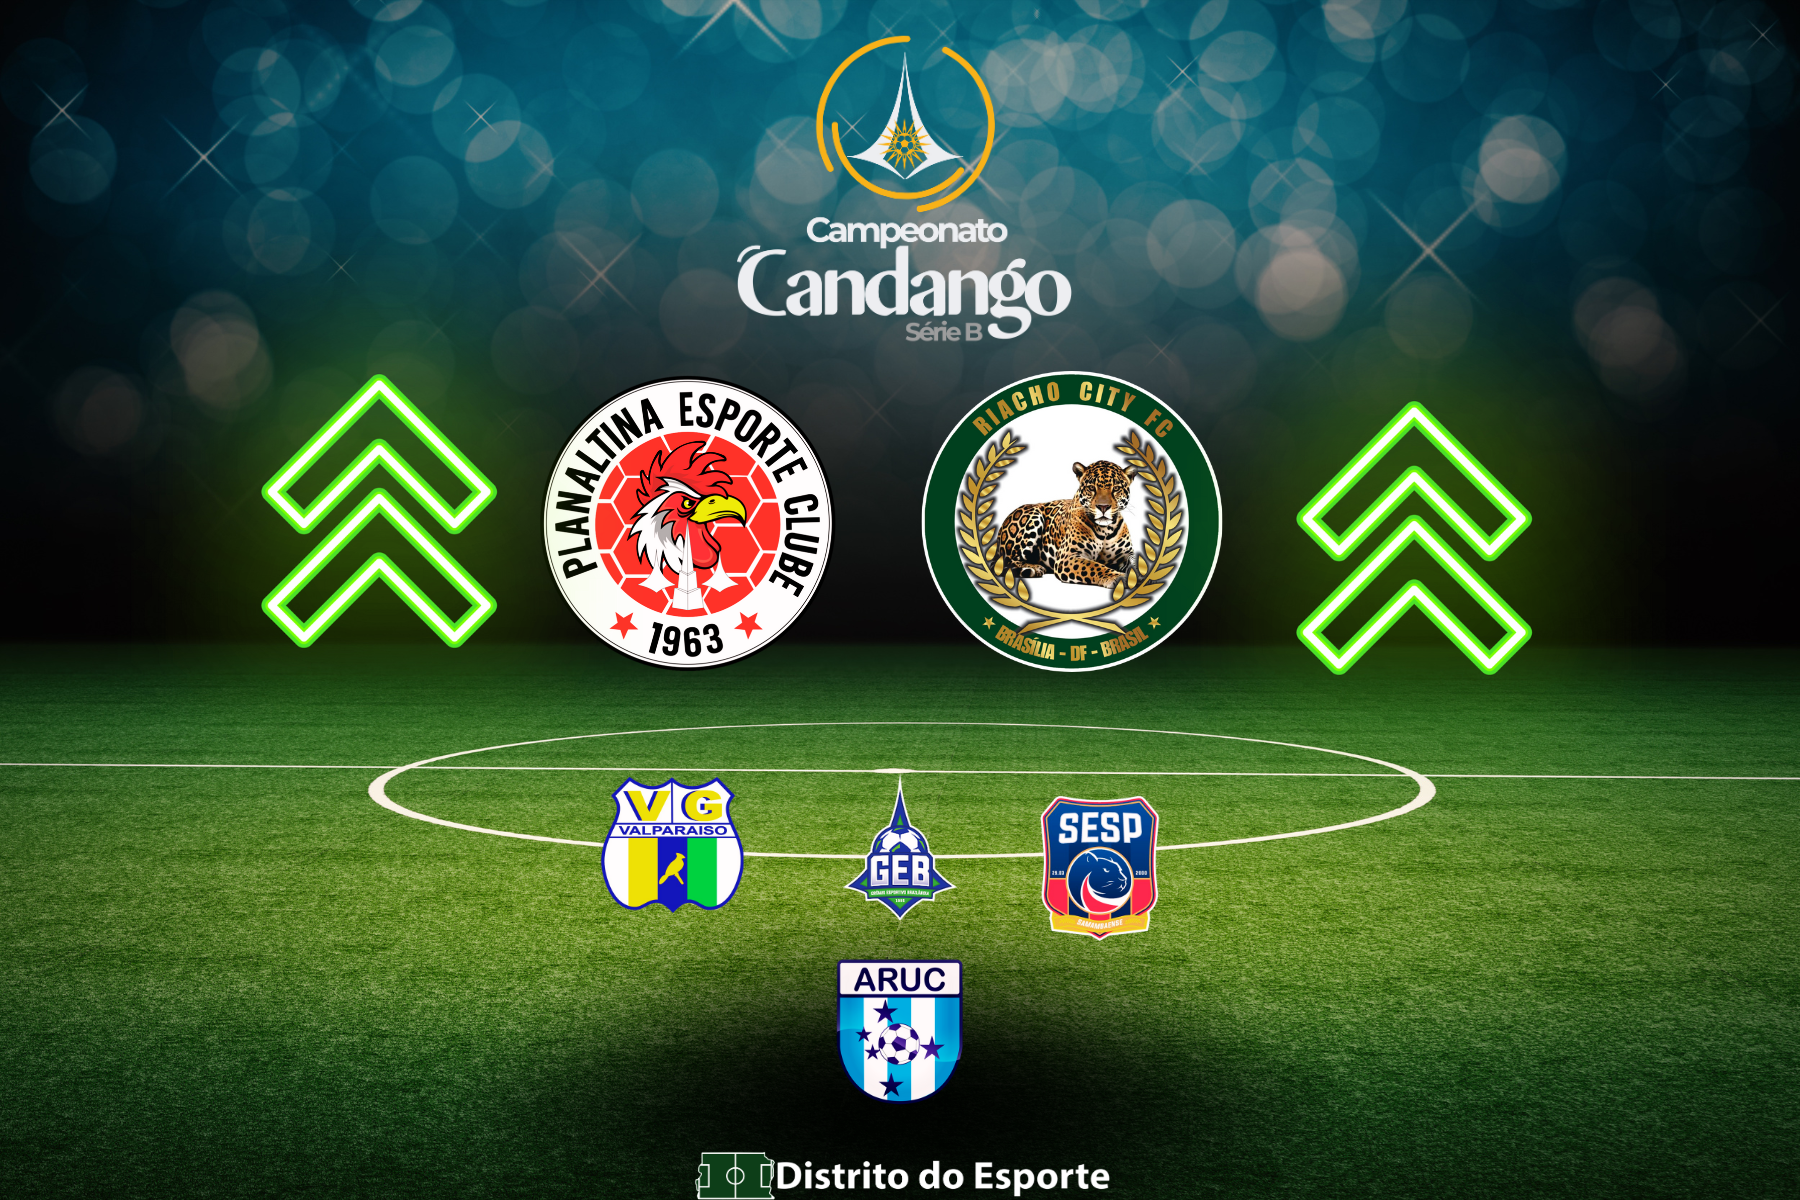 Grupo A da Segundinha - Segunda Divisão do Campeonato Candango - Planaltina, Riacho City, Greval, Brazlândia, SESP/Samambaense e Aruc